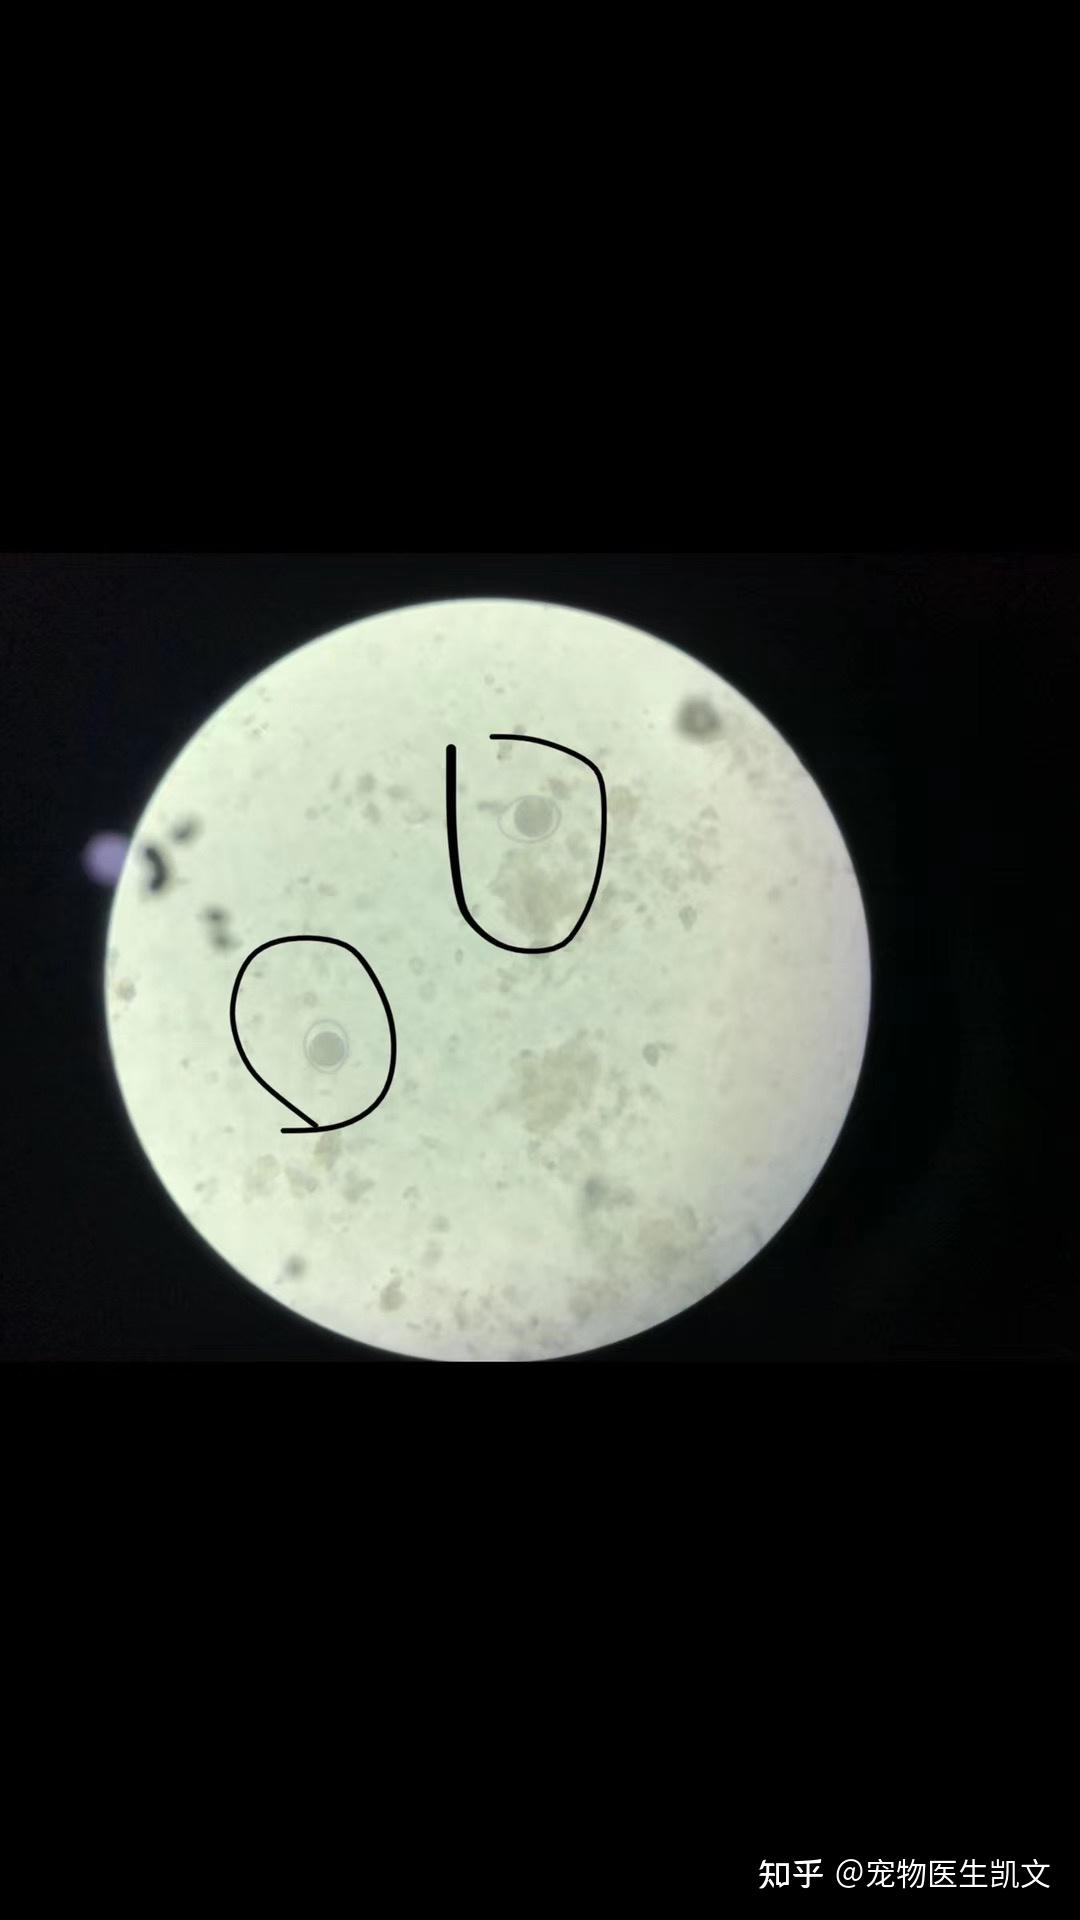 球虫 显微镜图片